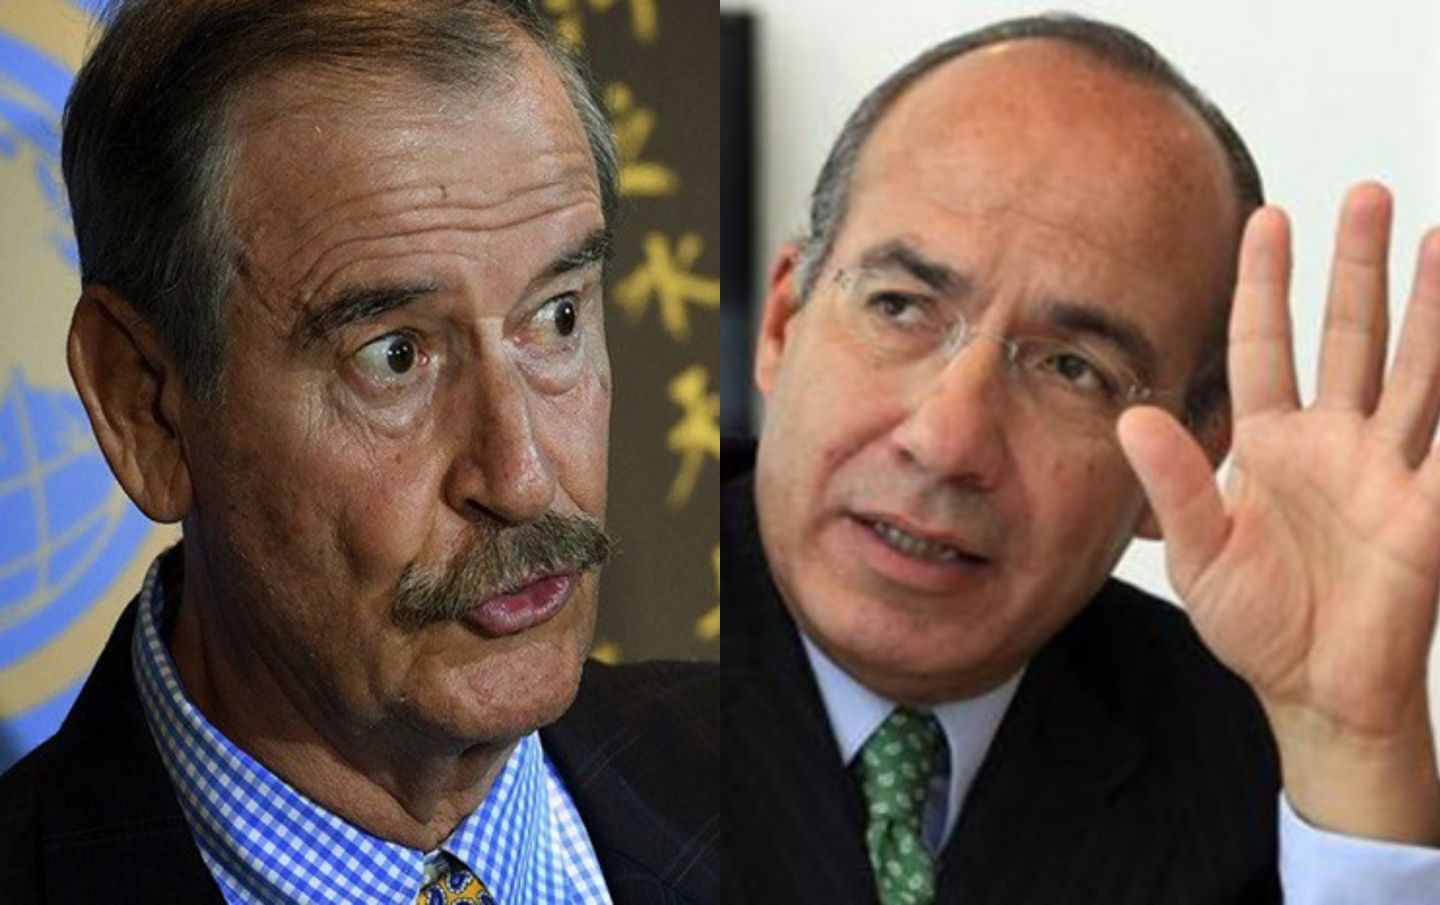 Fox se enriqueció escandalosamente y ahora es un mitómano; Calderón no se queda atrás